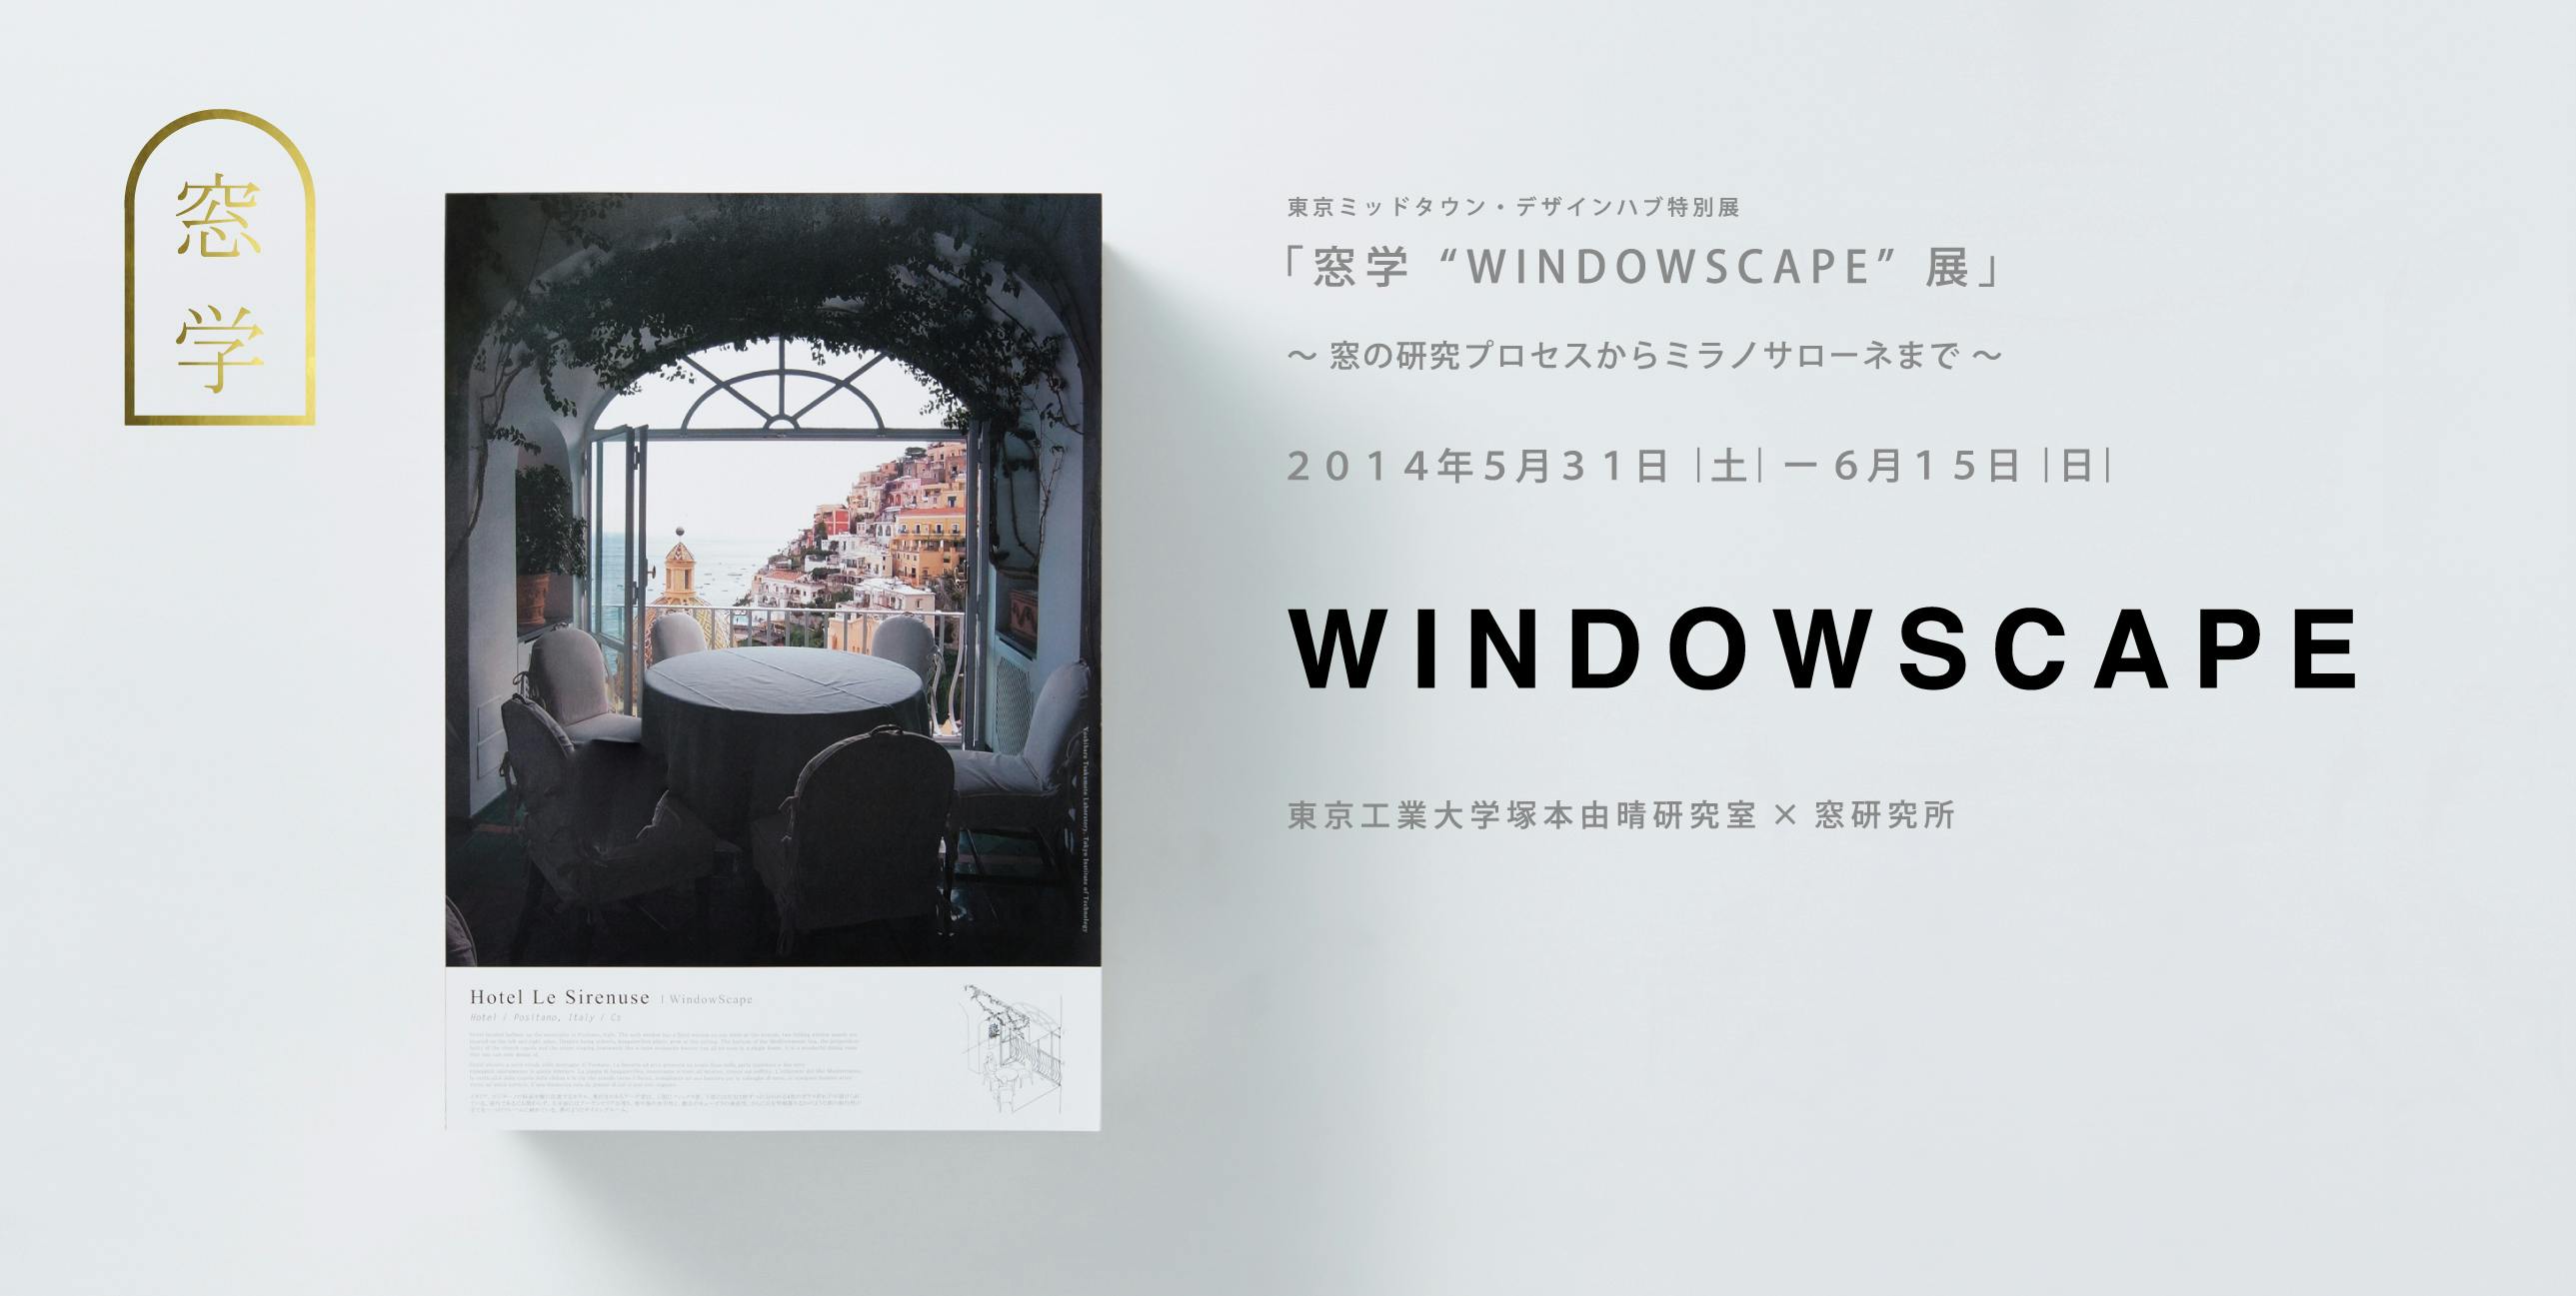 窓学“WINDOWSCAPE”展 〜窓の研究プロセスからミラノサローネまで〜